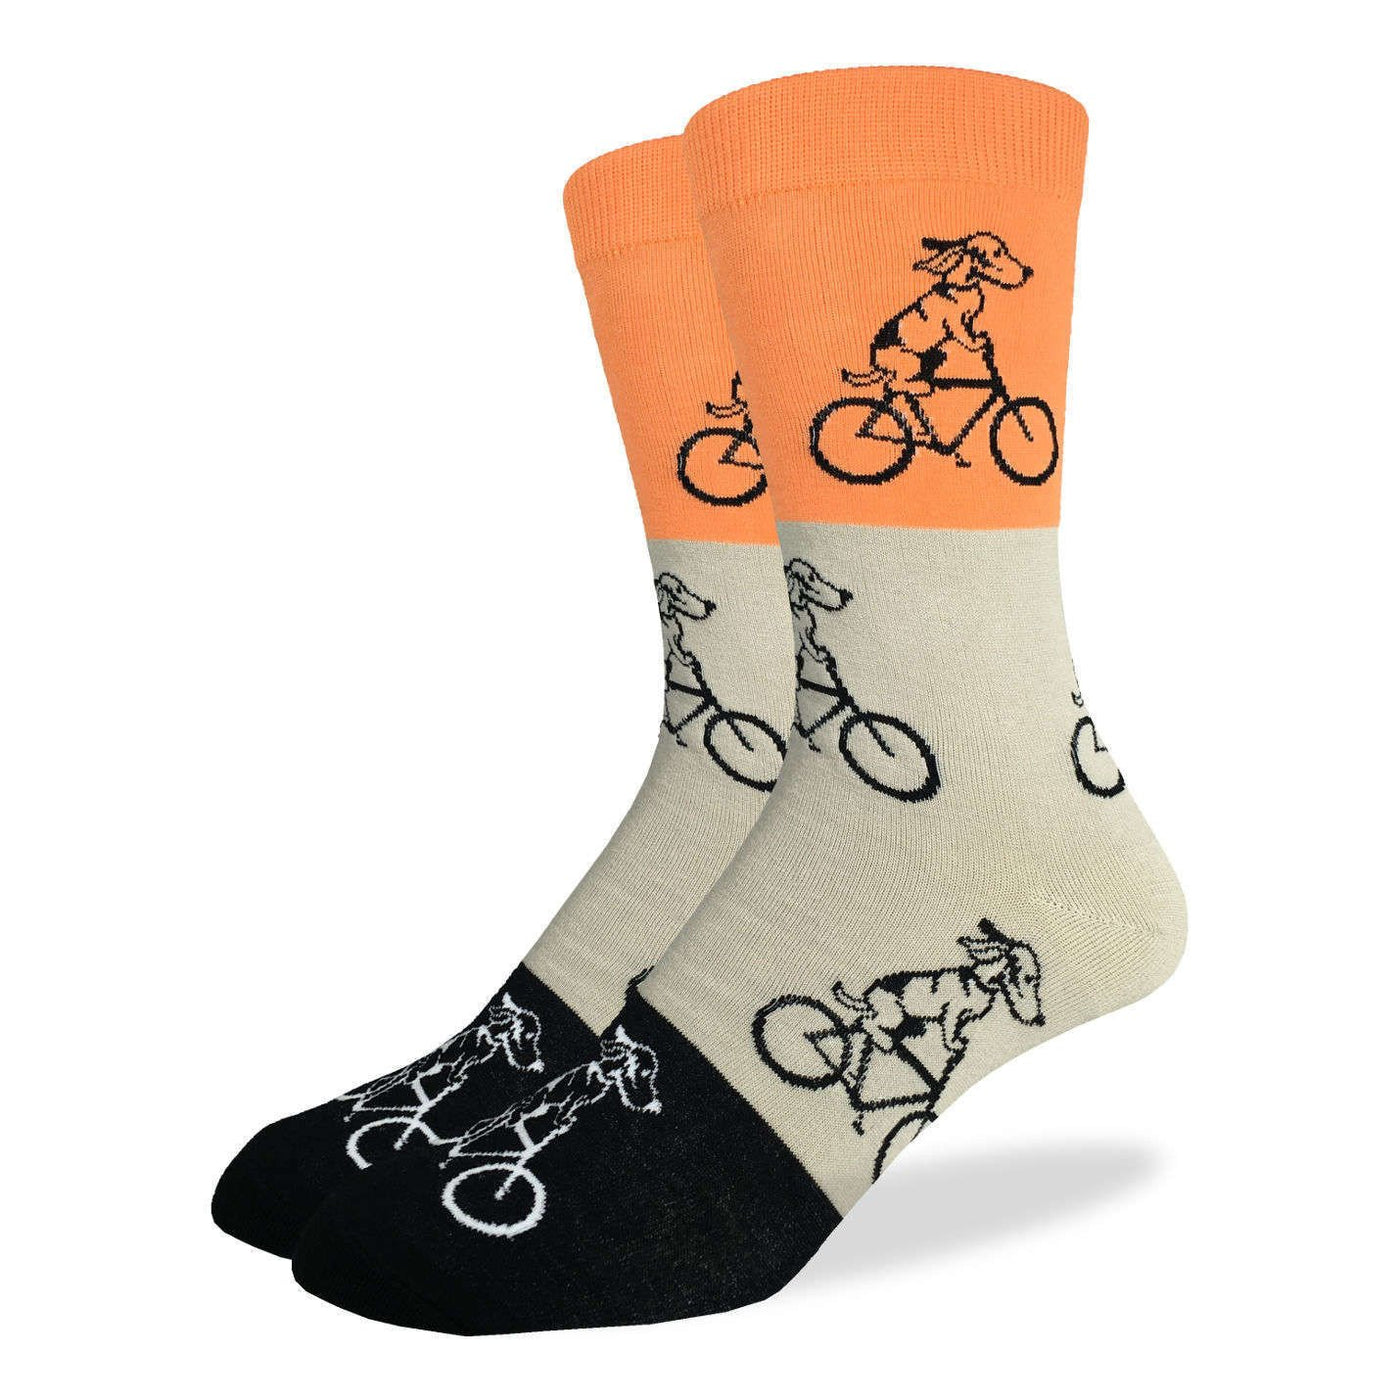 Orange dog bike socks